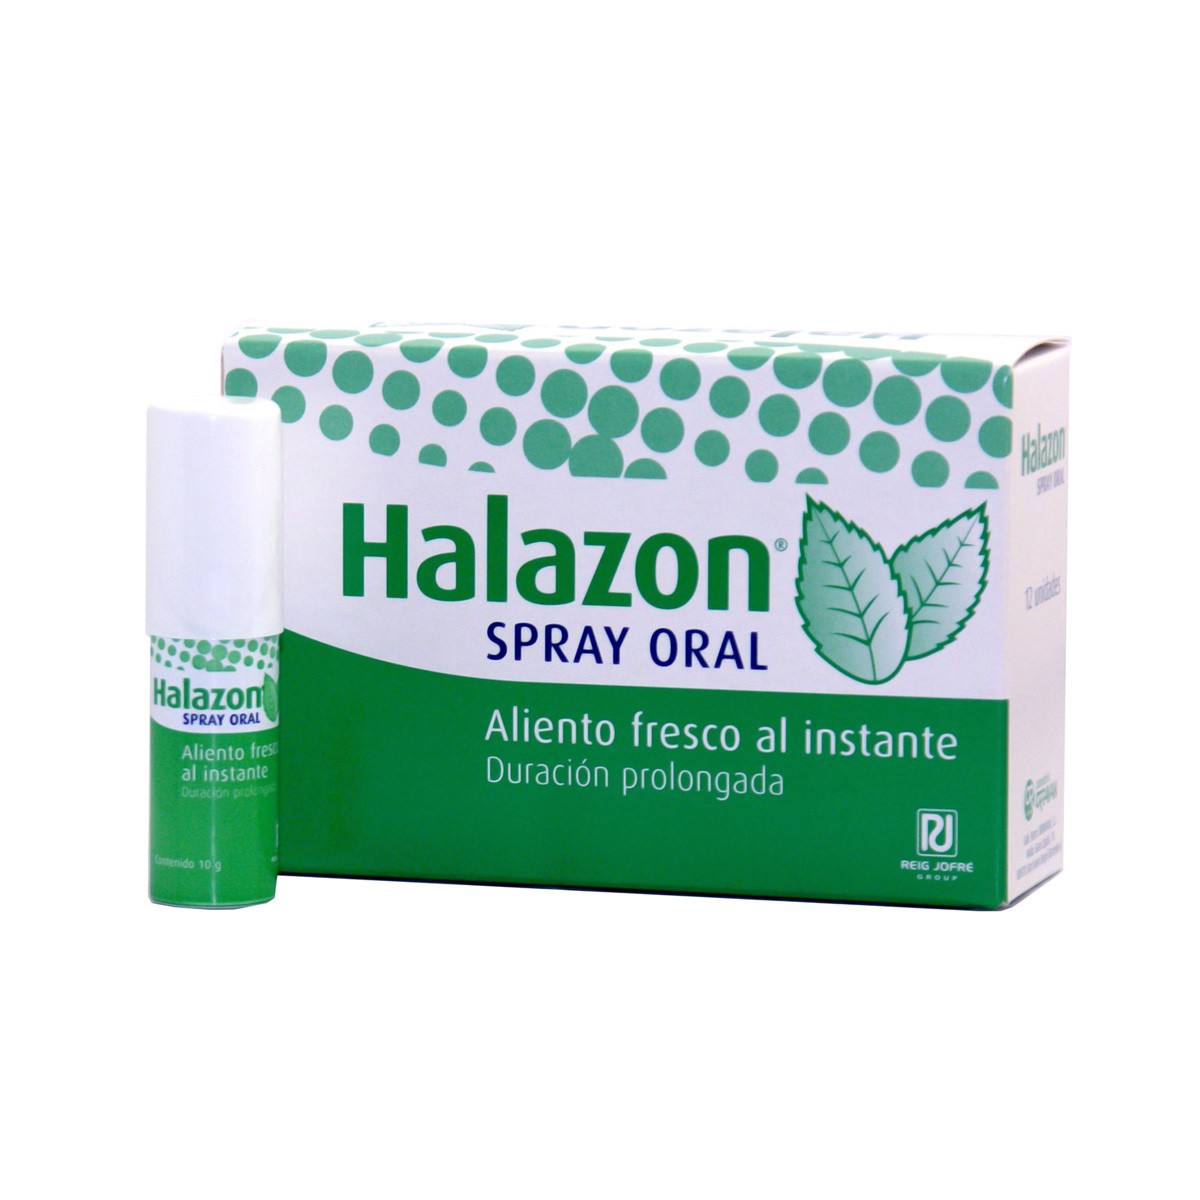 Halazon spray oral 10 g
